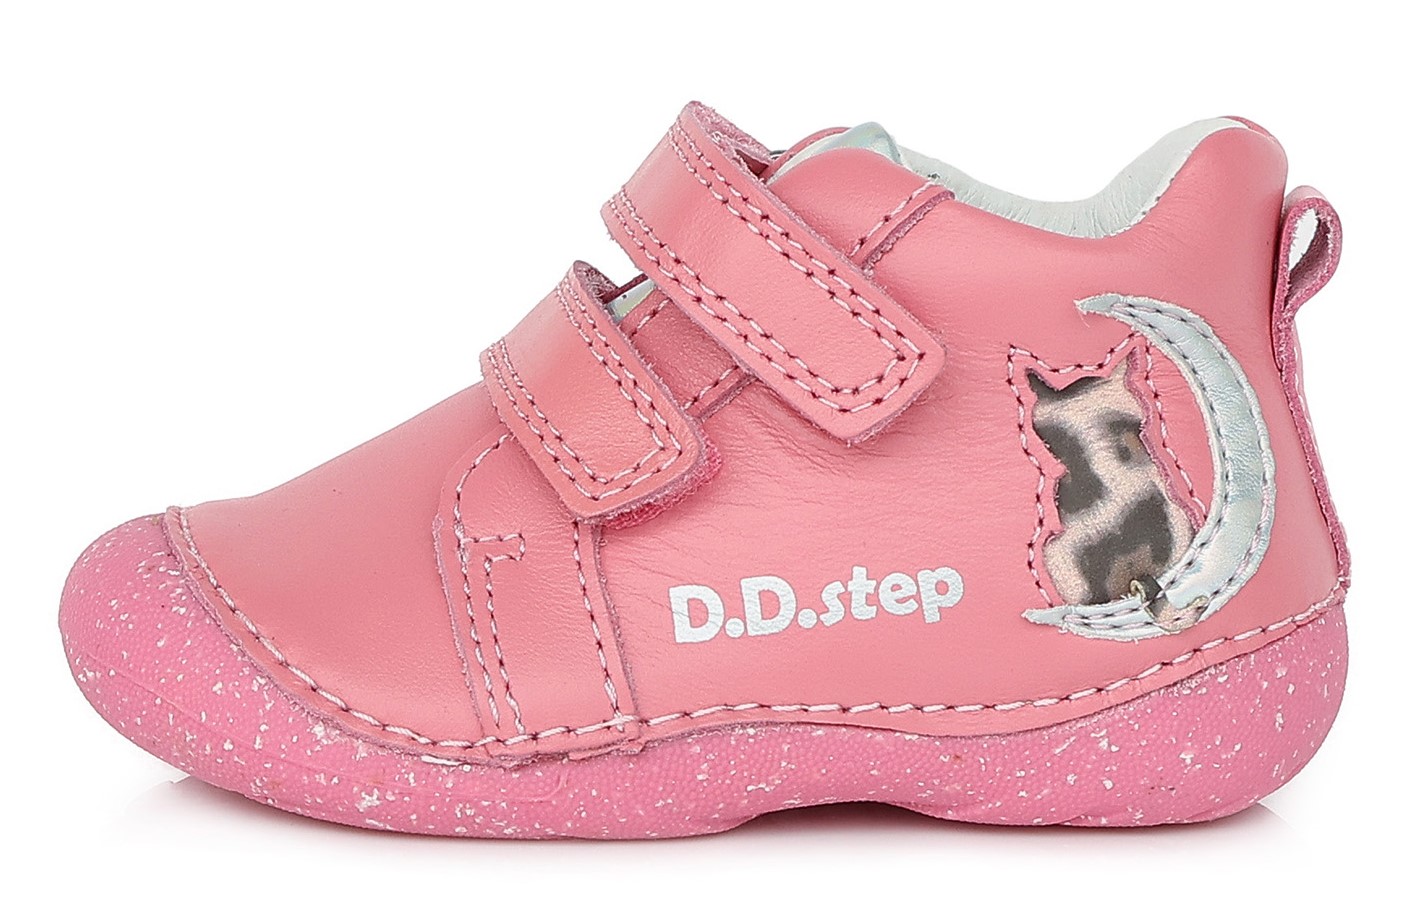 Dětské celoroční boty D.D.step 015-353 růžové Velikost: 24 (EU)